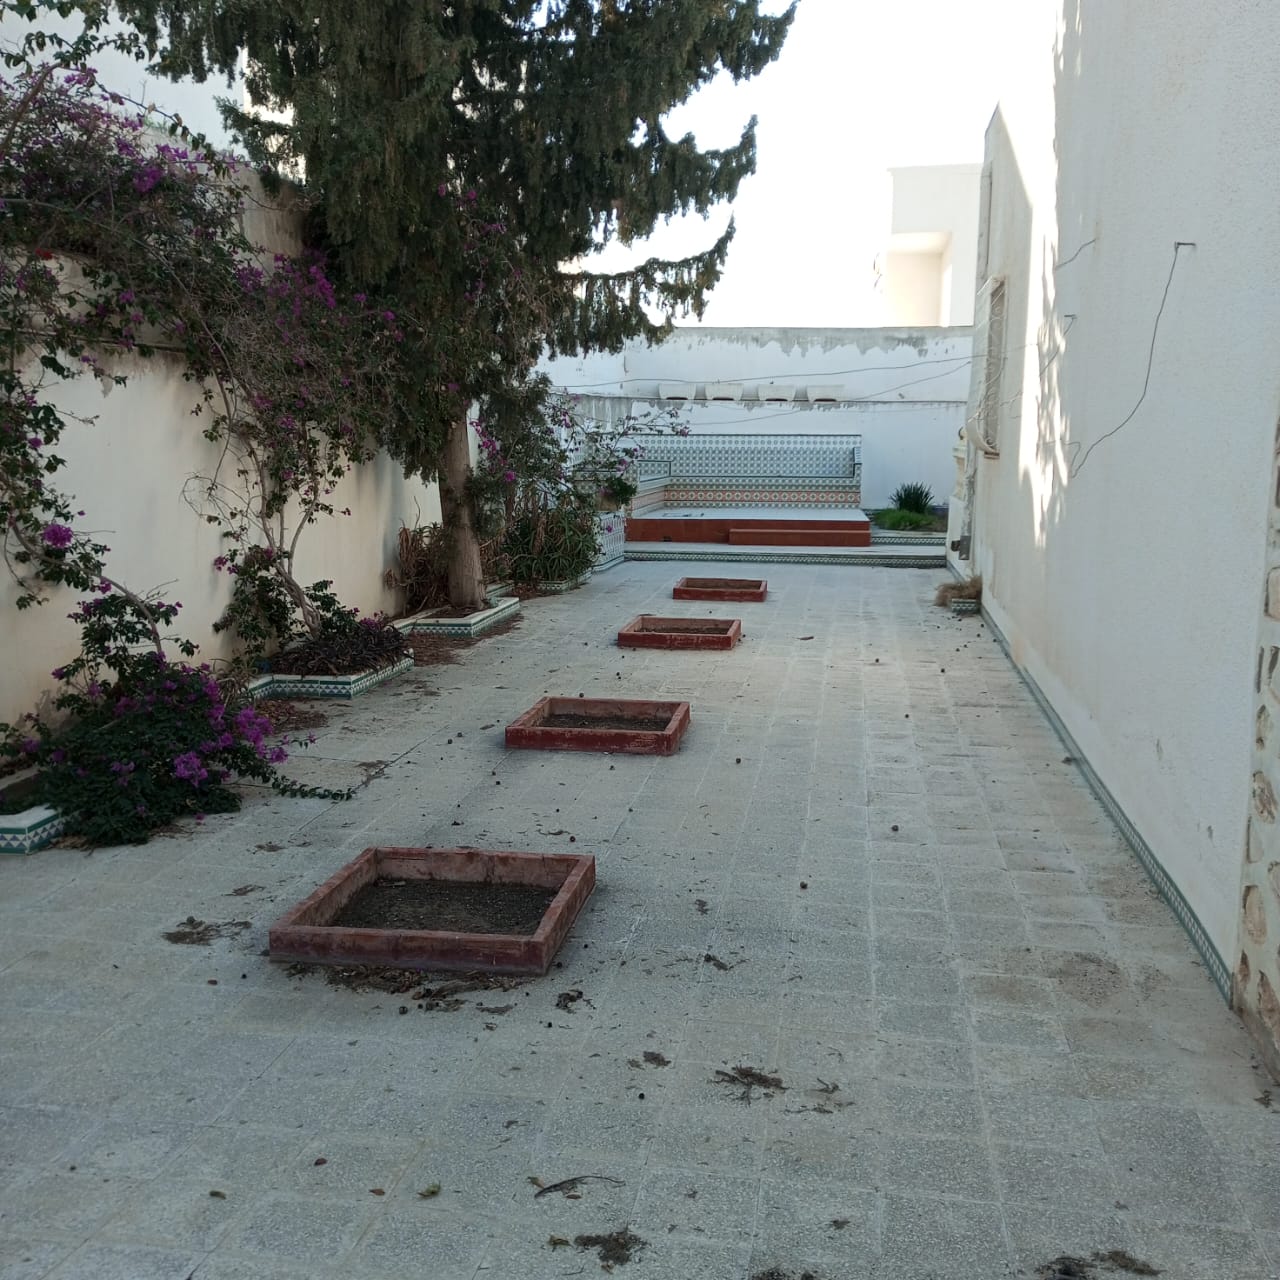 Sousse Jaouhara Sousse Ibn Khaldoun Vente Maisons Villa  rnover cit olympique sousse